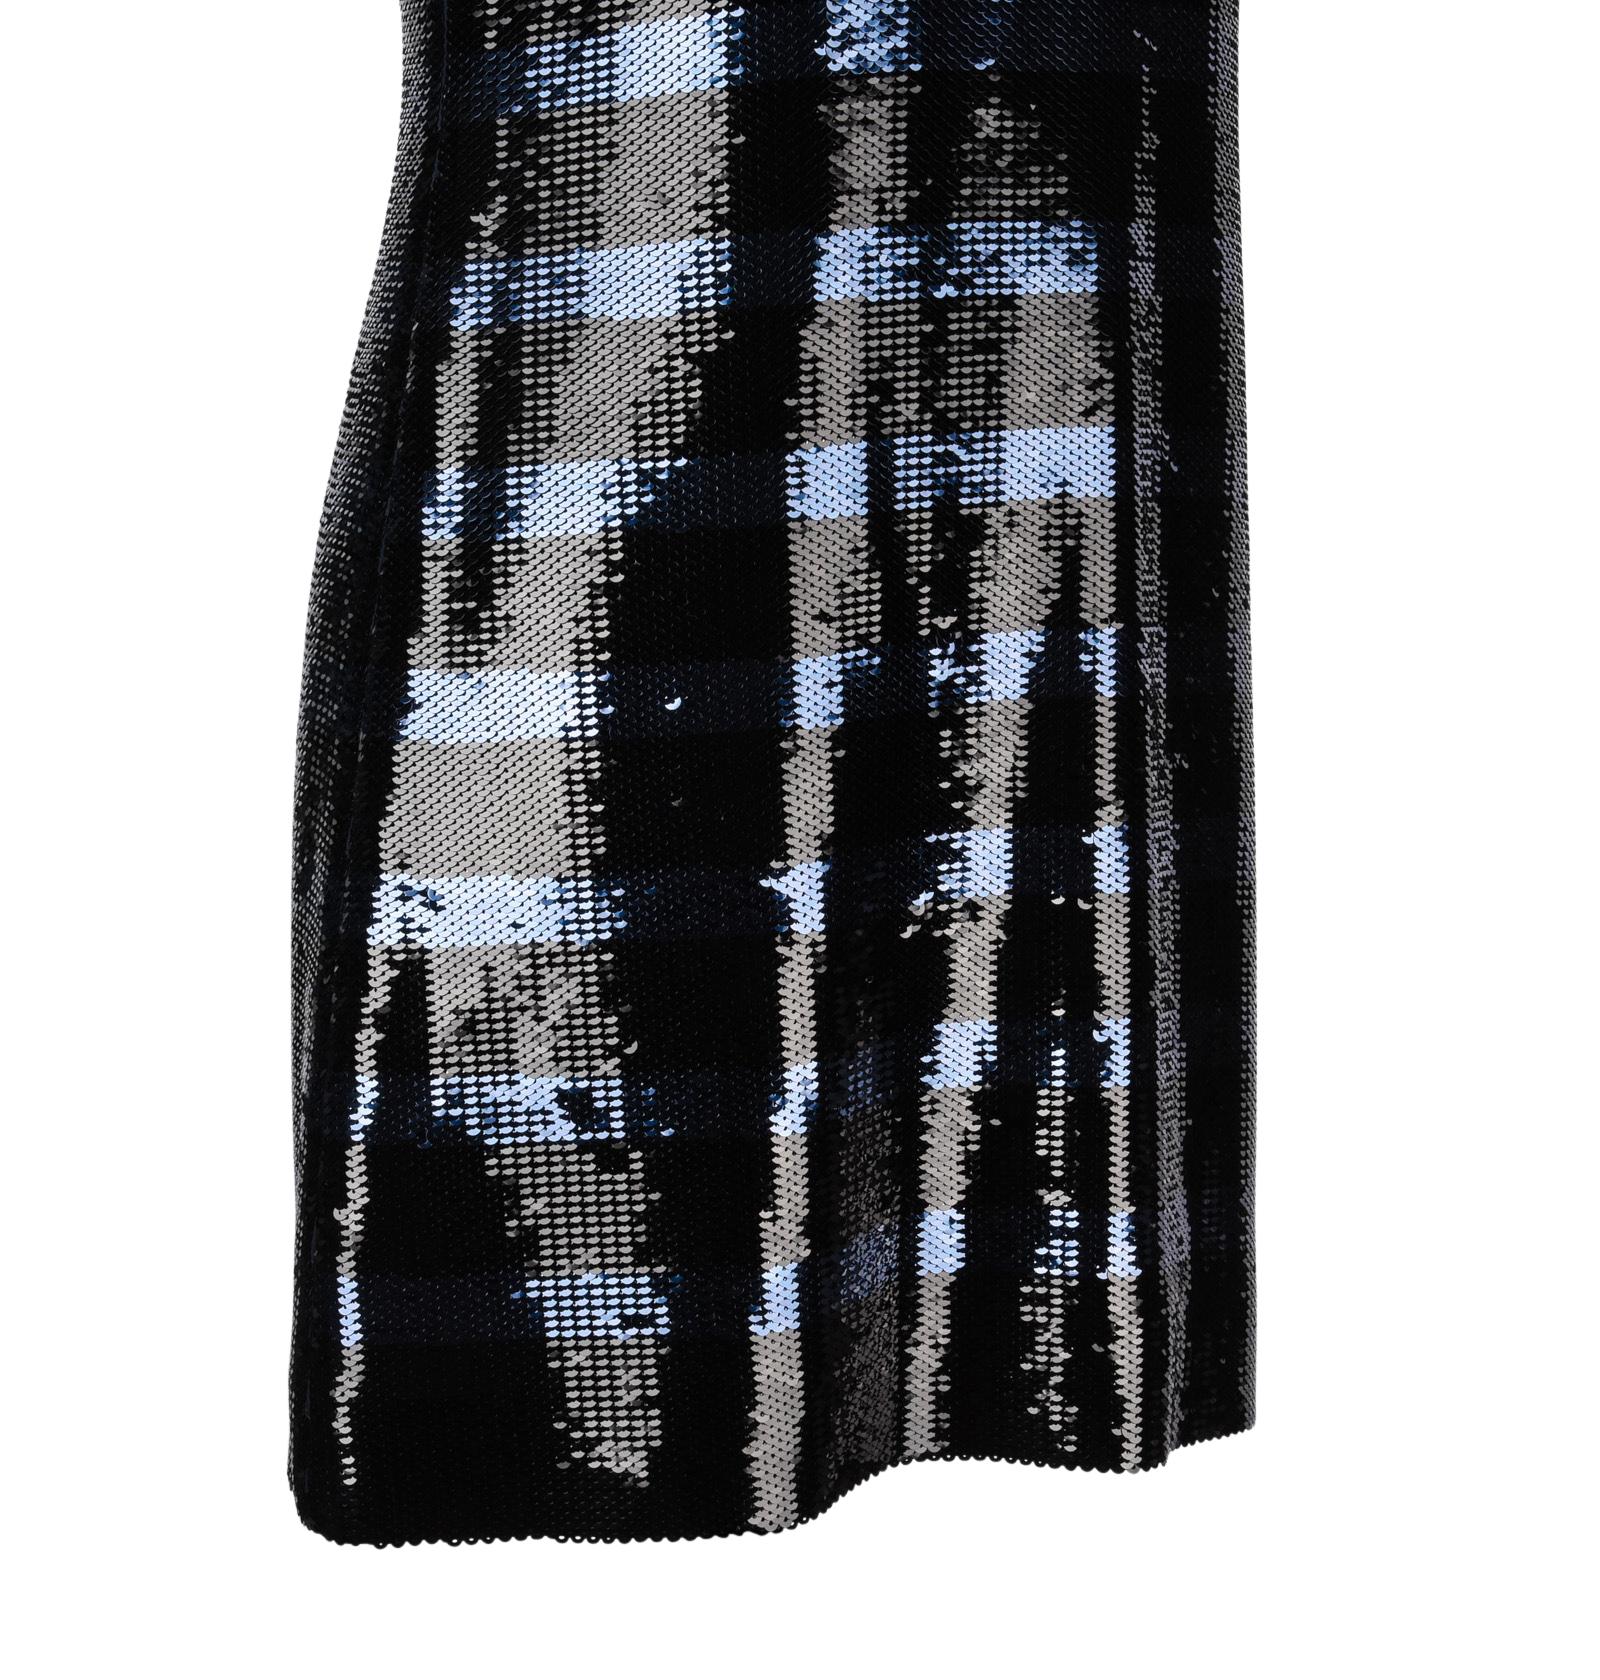 Christian Dior Dress Striped Sequin Embellished Navy / Black 6 1